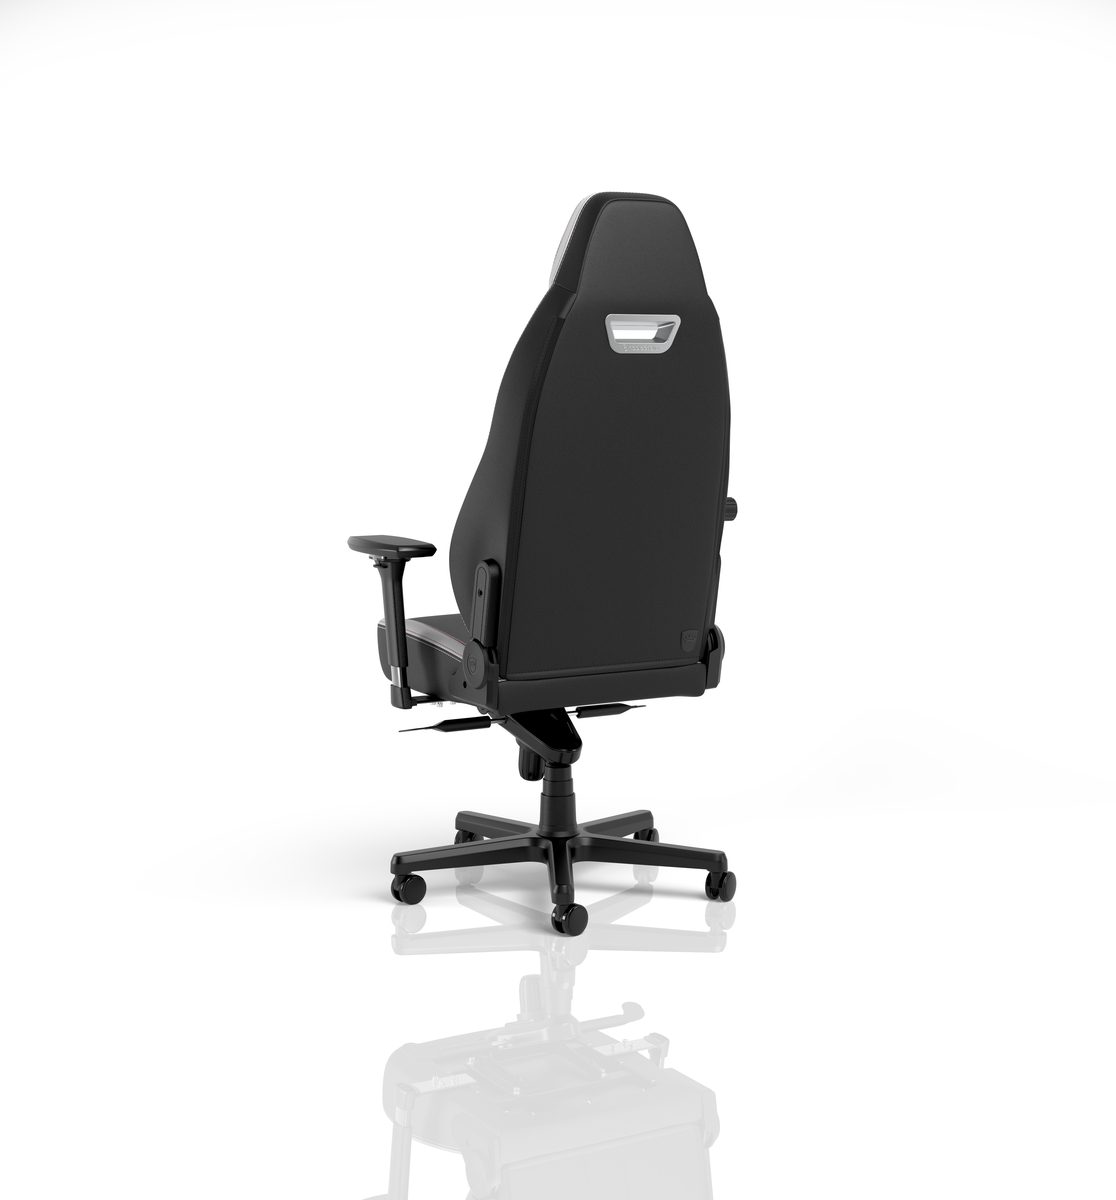 Gamer szék noblechairs LEGEND PU Bőr Fekete/Fehér/Piros